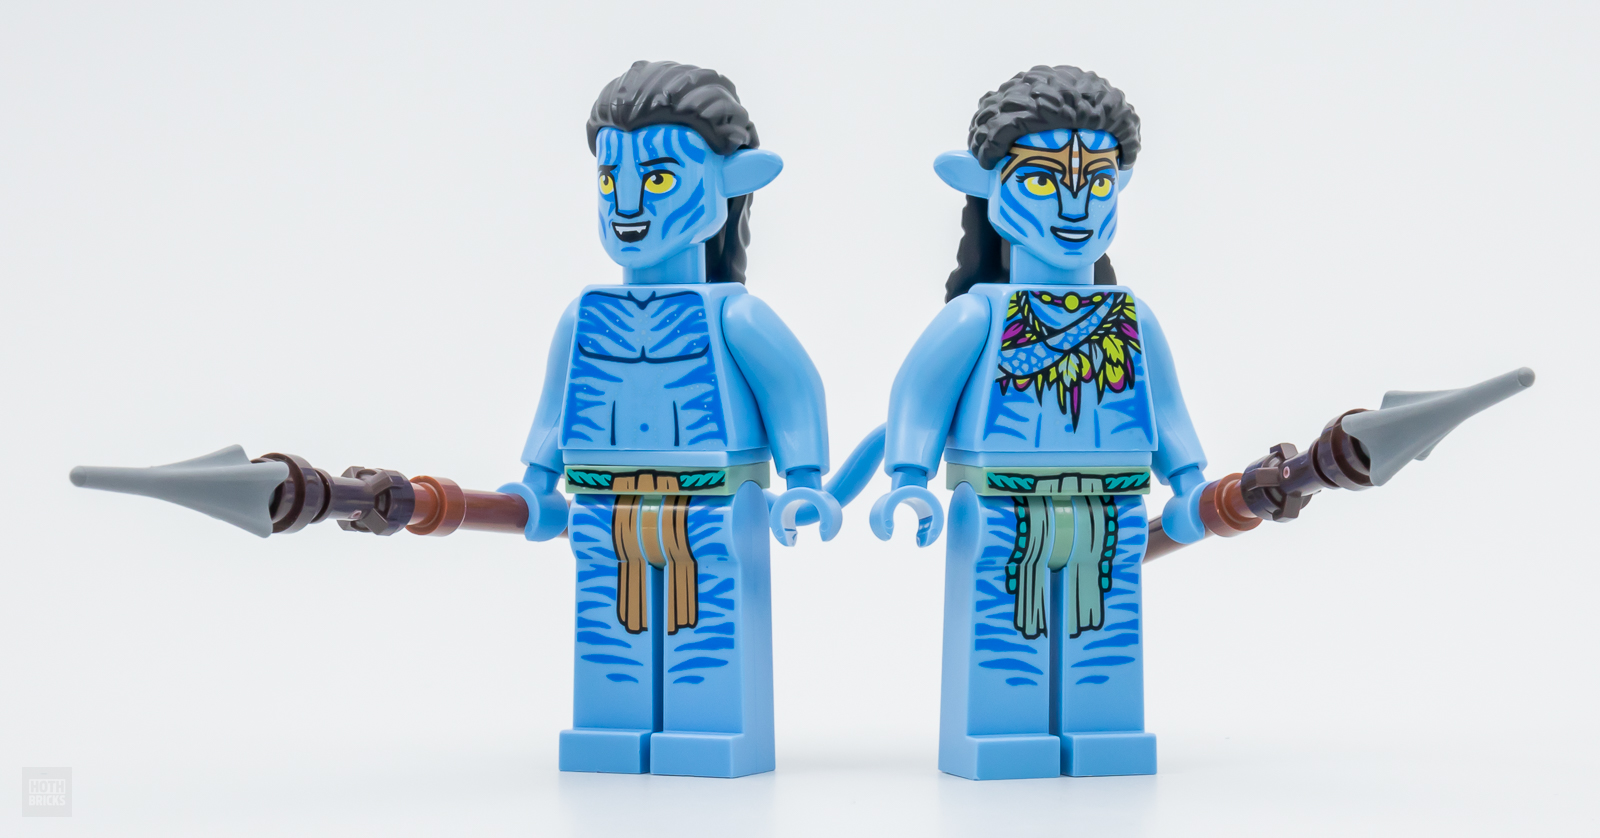 LEGO Avatar Jake & Neytiri’s First Banshee Flight Set (75572)